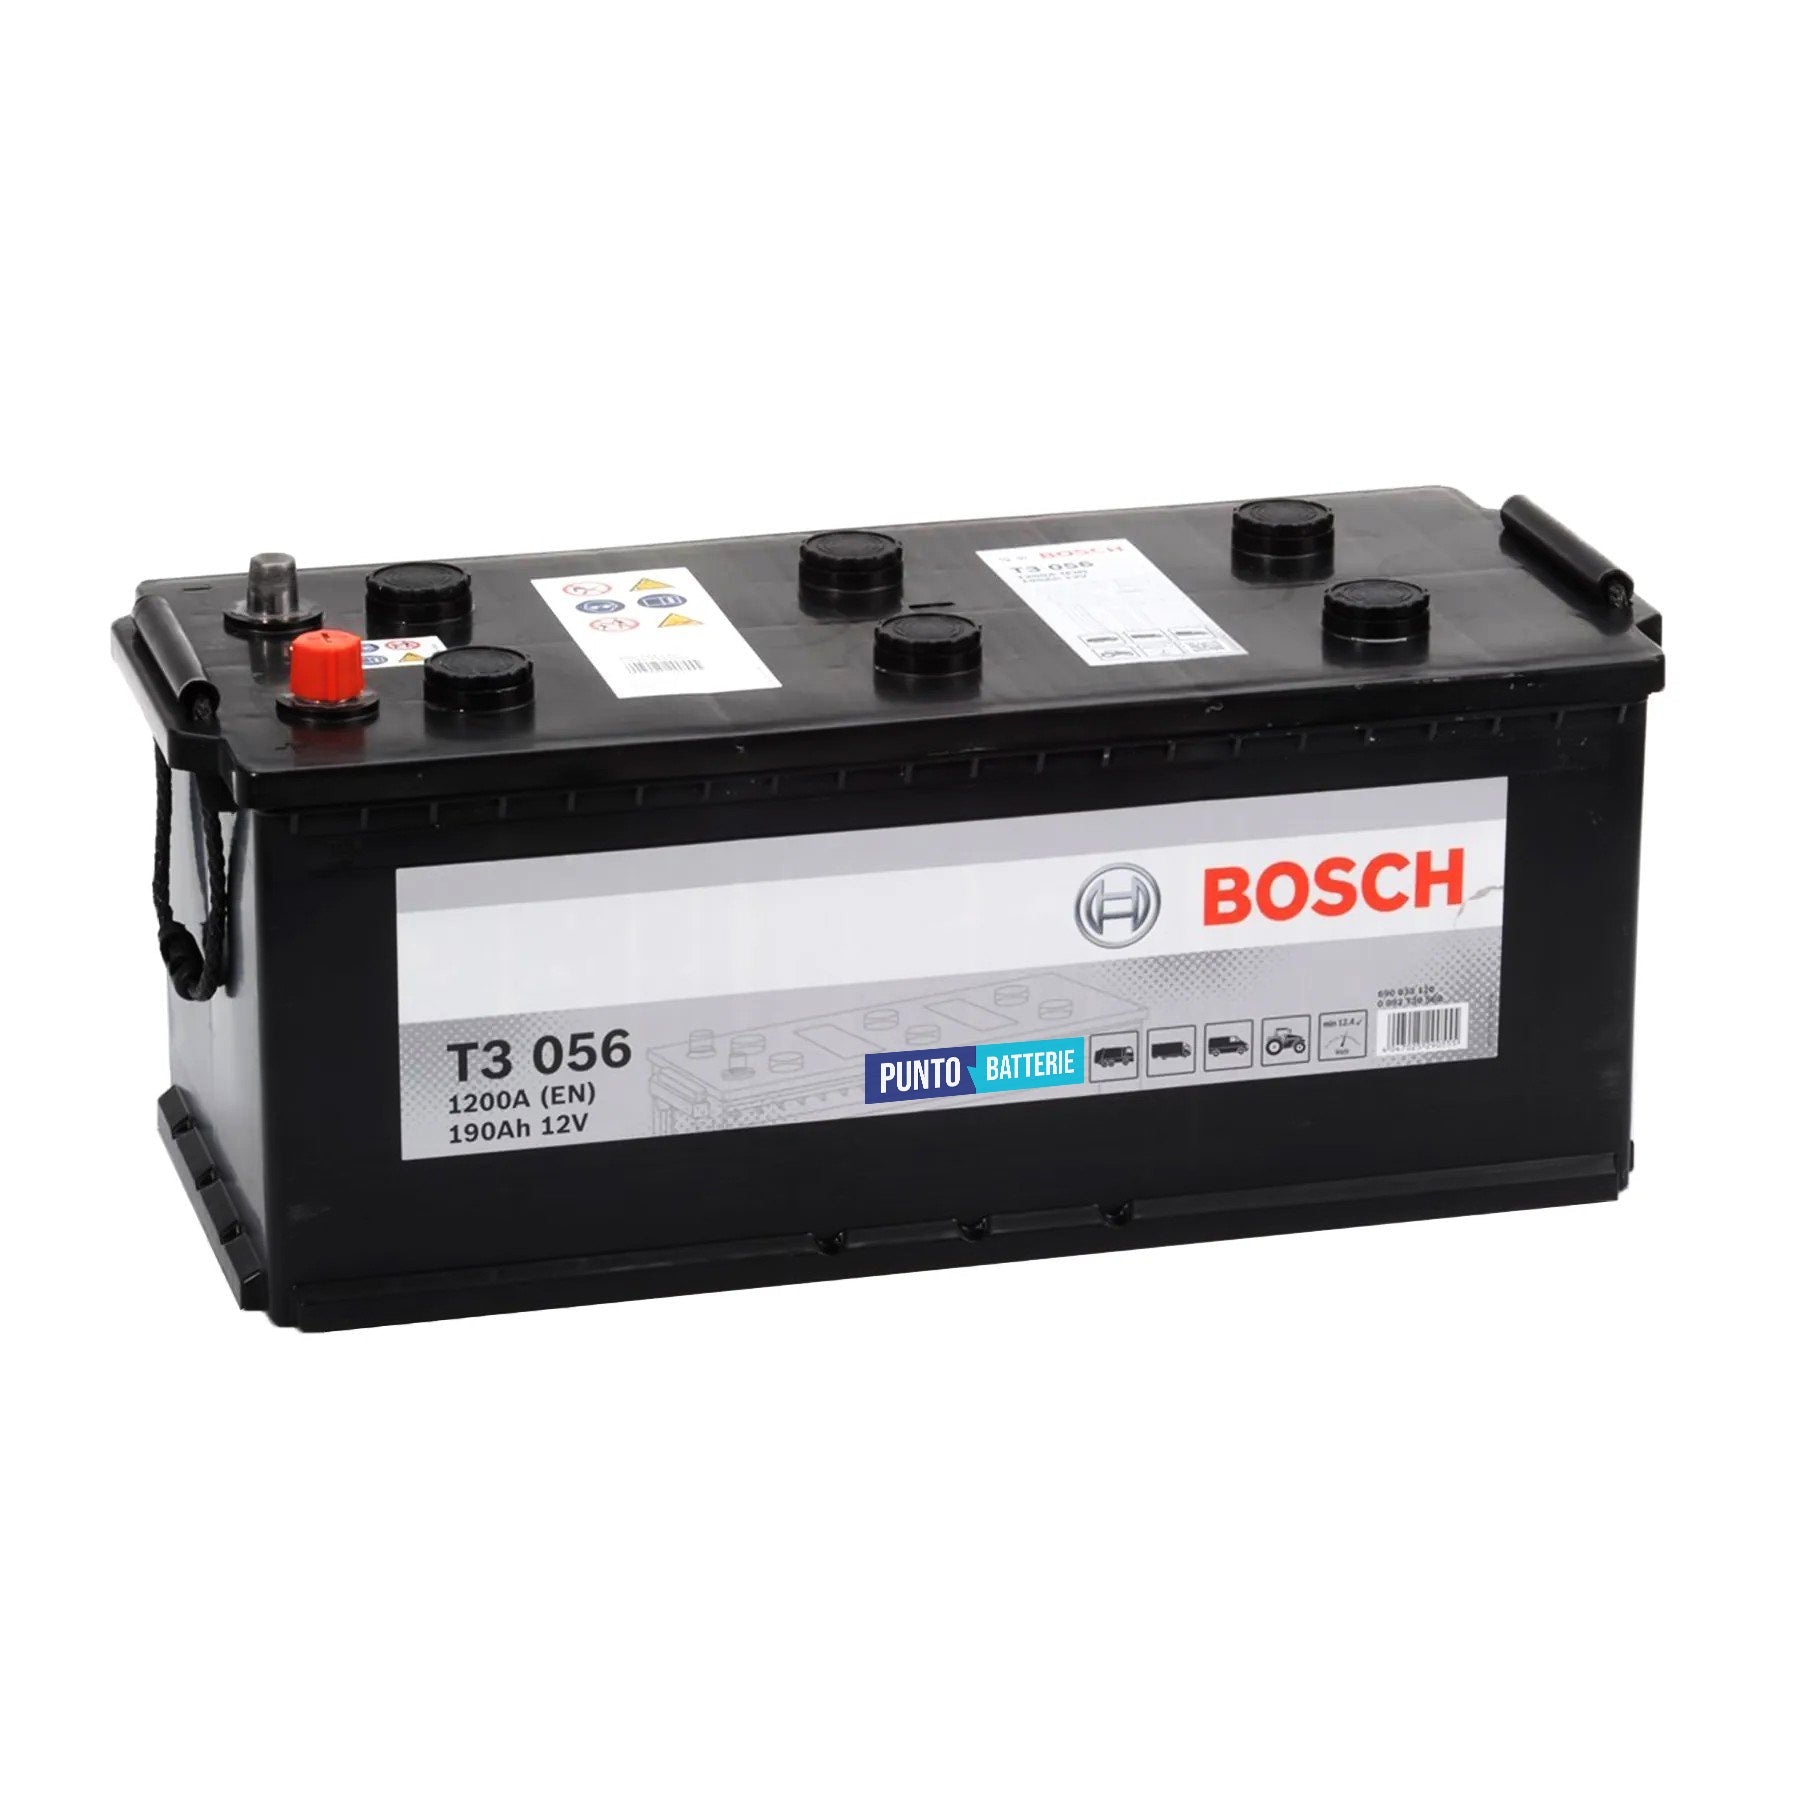 Batteria originale Bosch T3 T3056, dimensioni 513 x 223 x 223, polo positivo a destra, 12 volt, 190 amperora, 1200 ampere. Batteria per camion e veicoli pesanti.